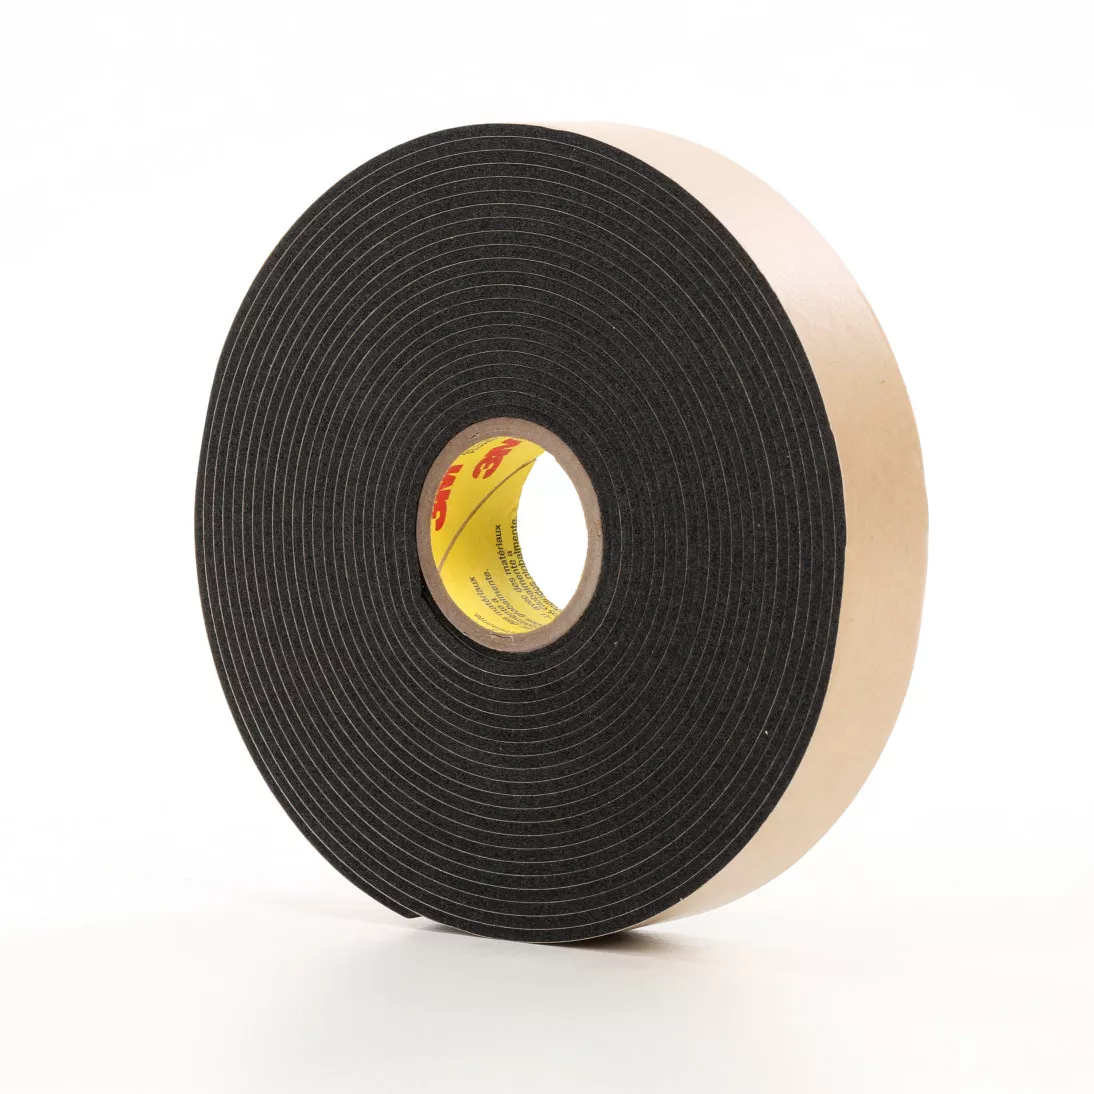 3M™ Double Coated Polyethylene Foam Tape 4496B, Black, 18 in x 36 Yds,
62 mil, 1 roll per case